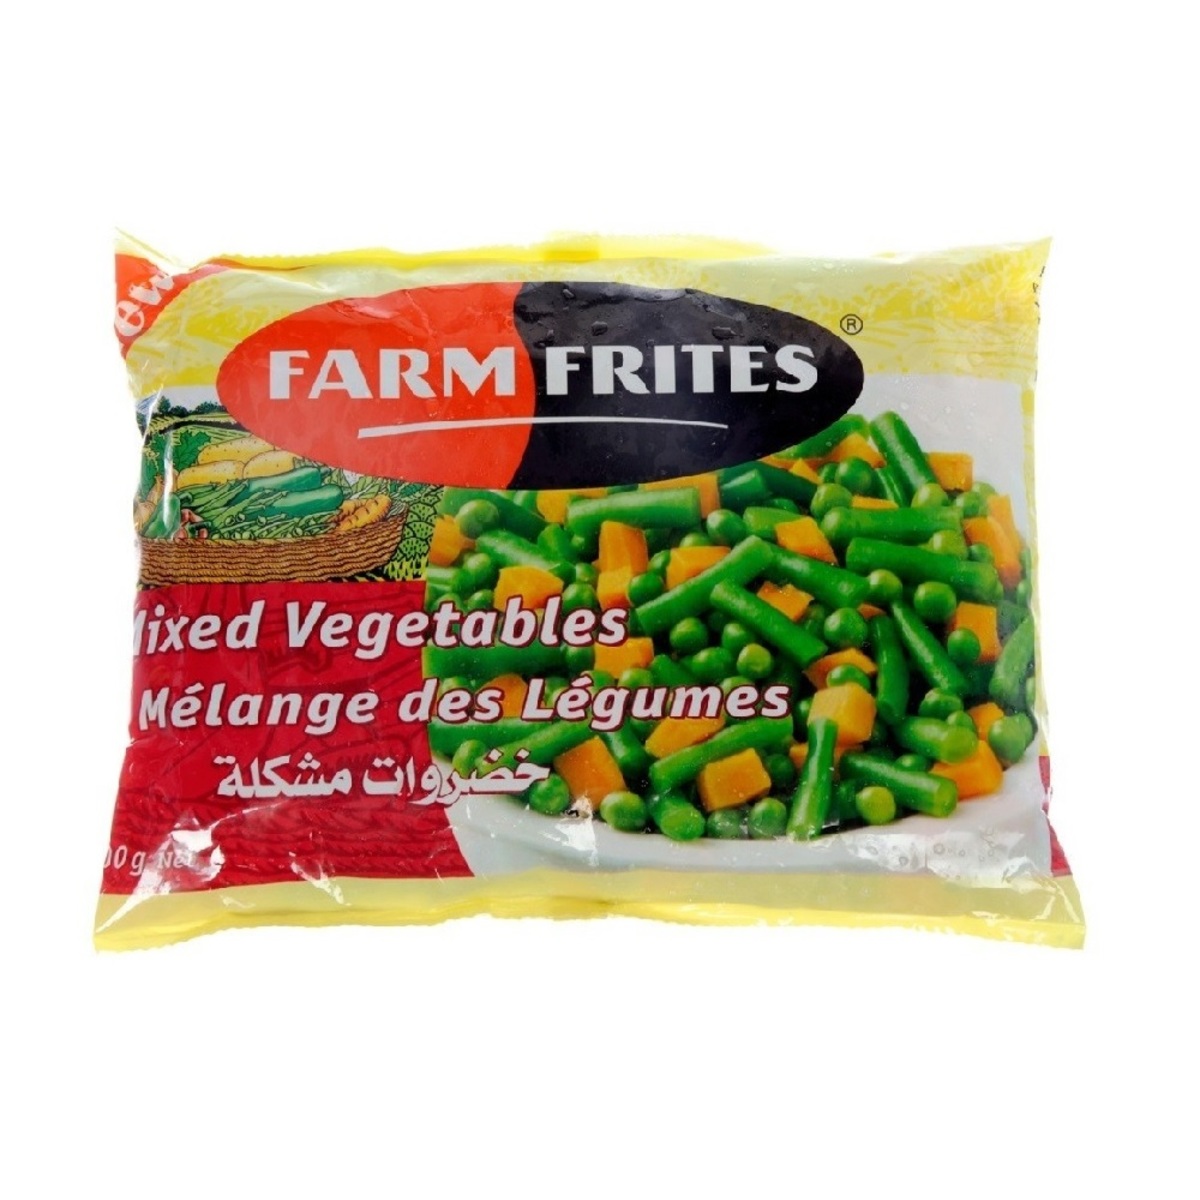 Farm Frites Mixed Vegetables 400g